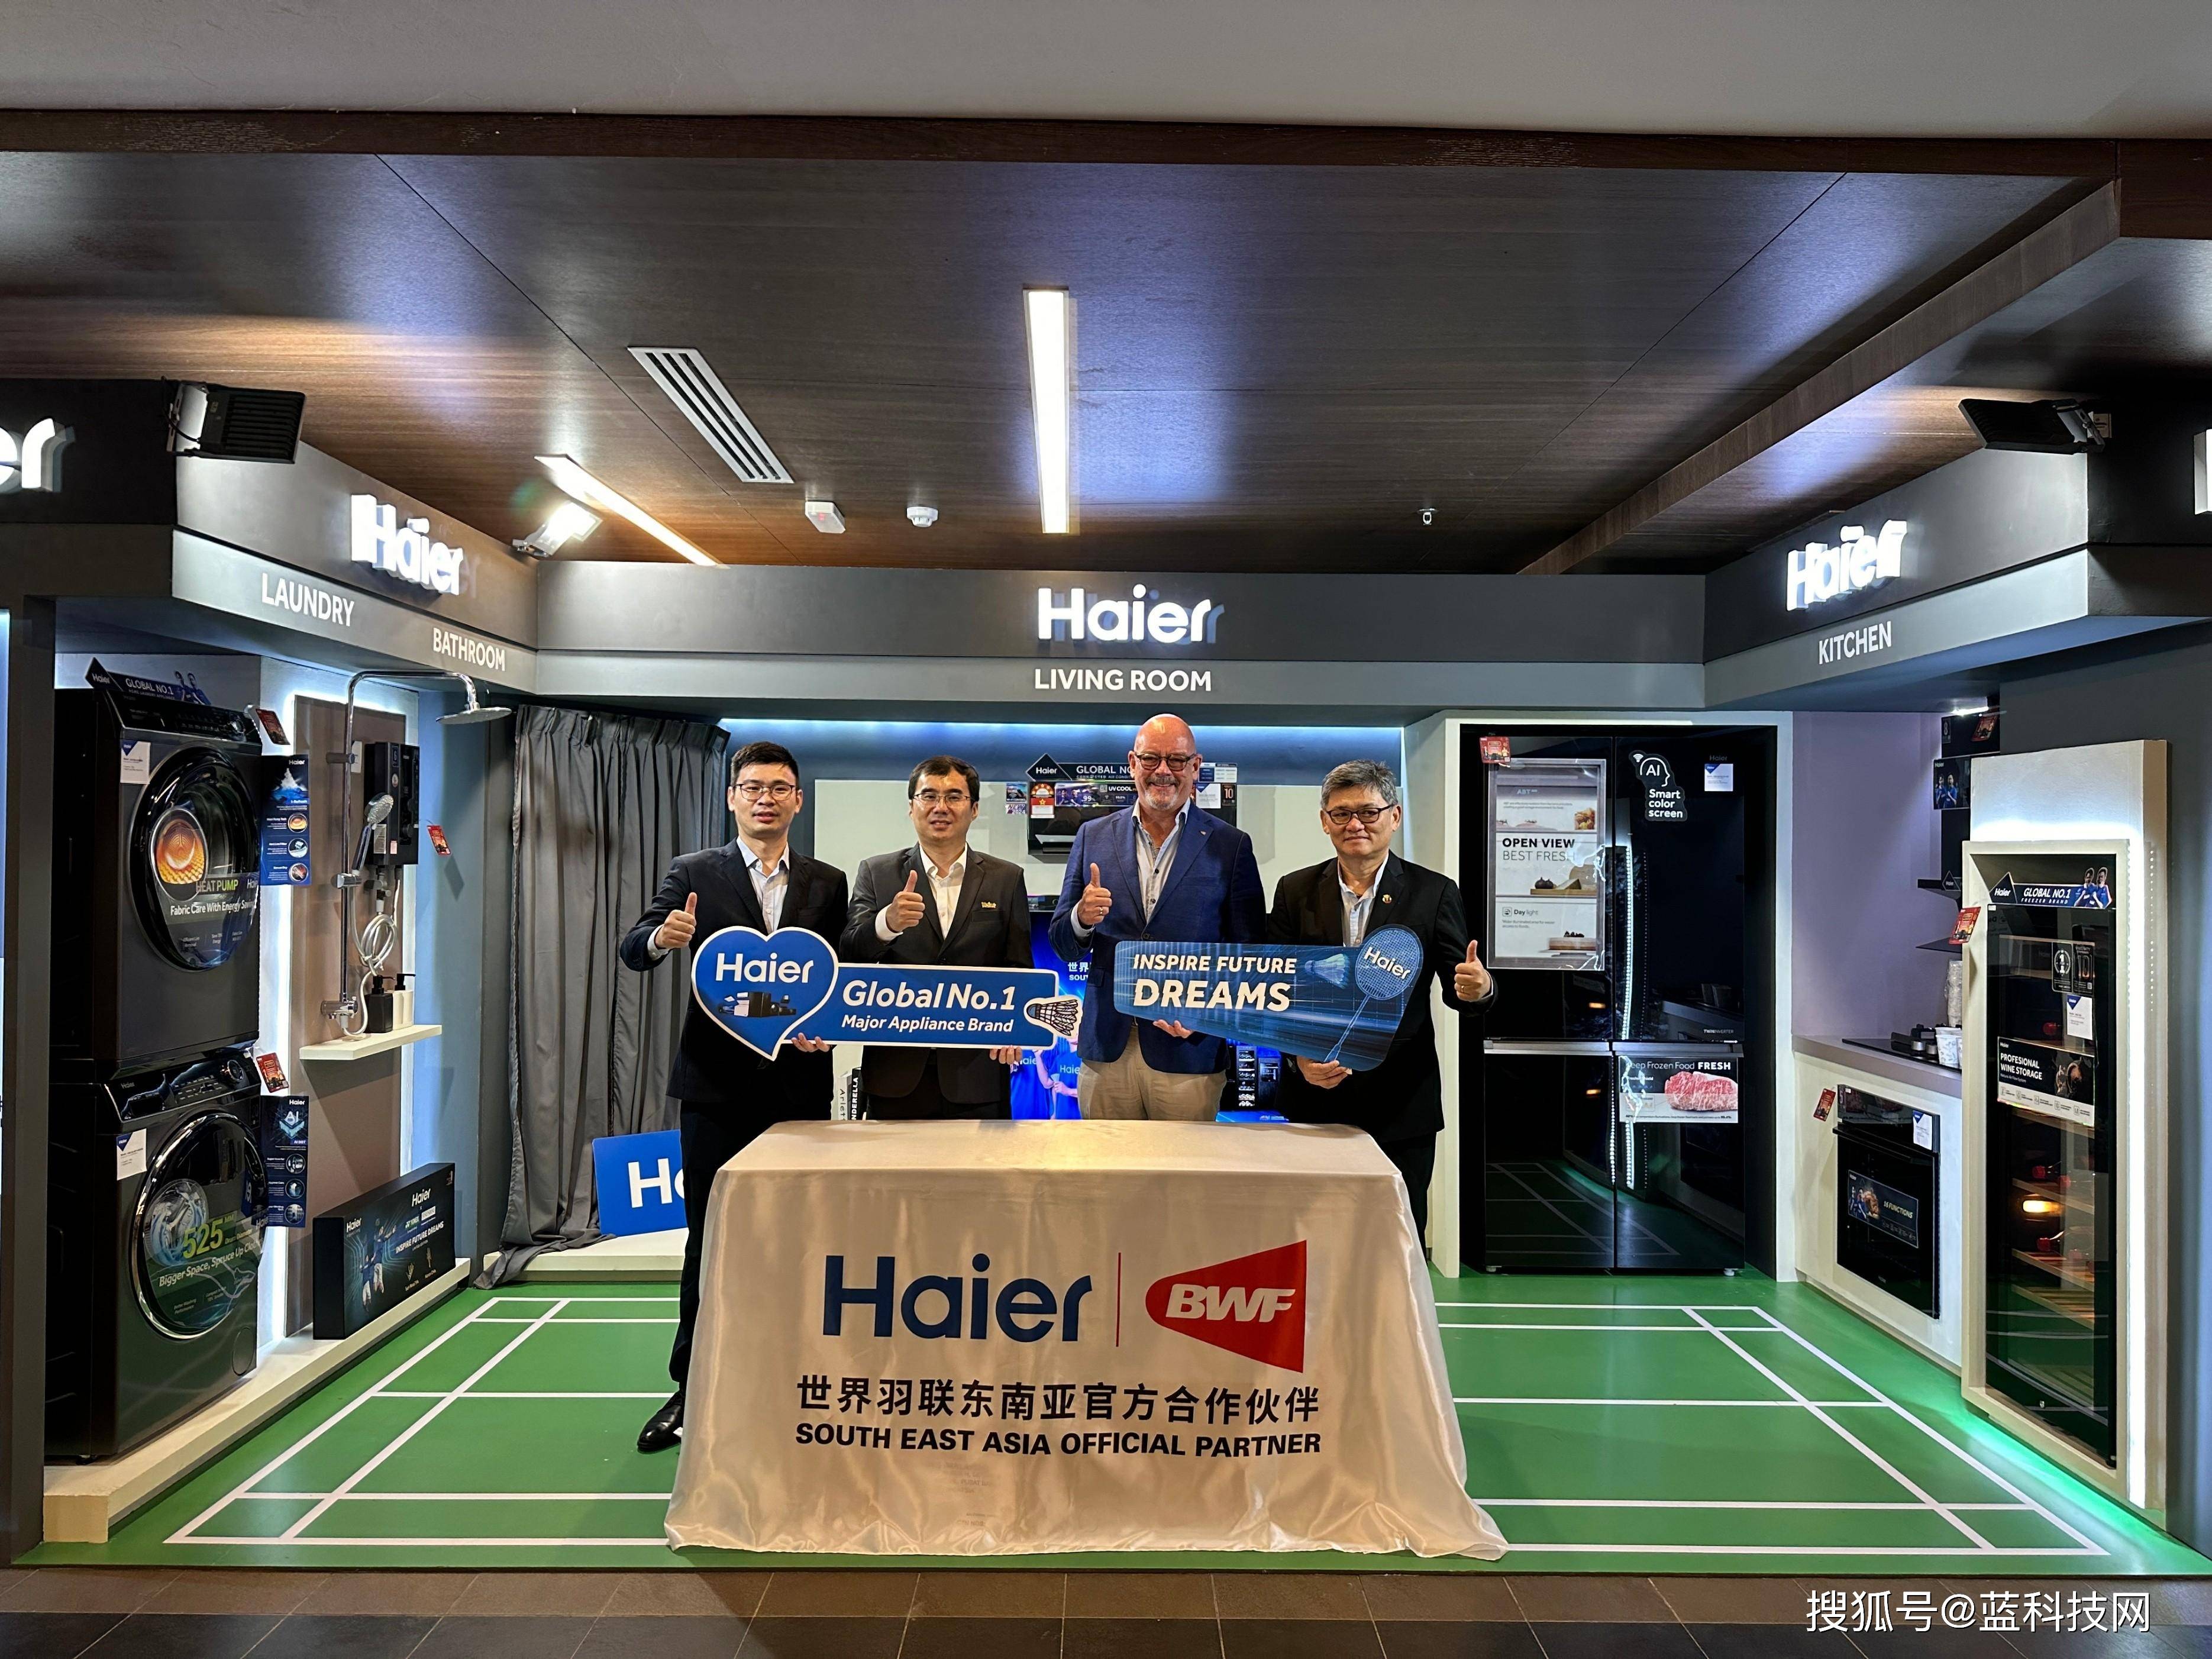 海尔智家成世界羽联东南亚官方合作伙伴，这三种特质与冠军吻合